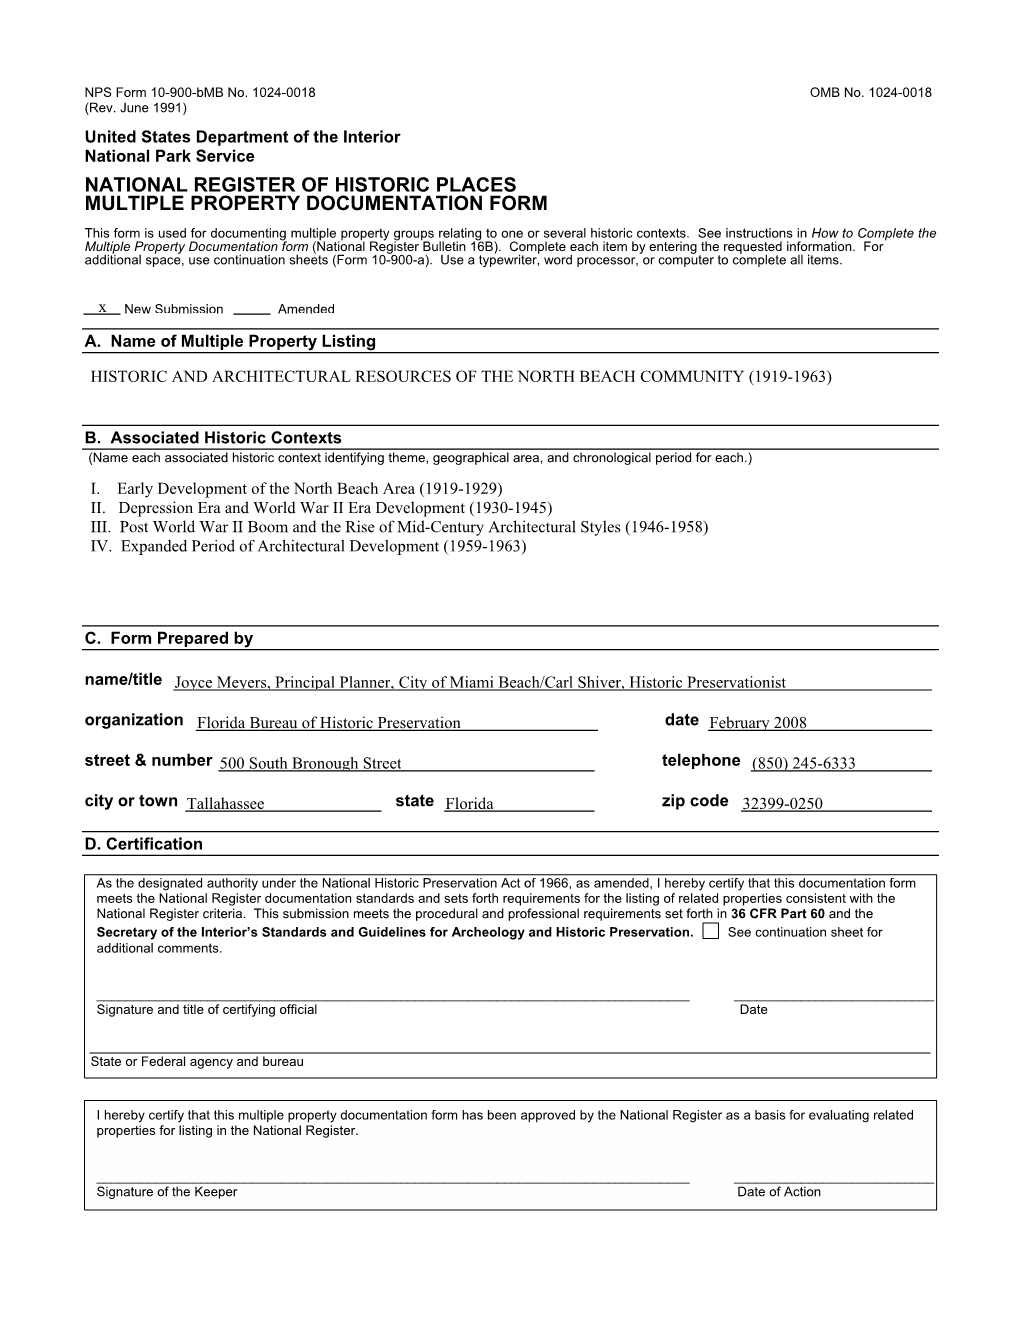 NPS Form 10-900-Bmb No